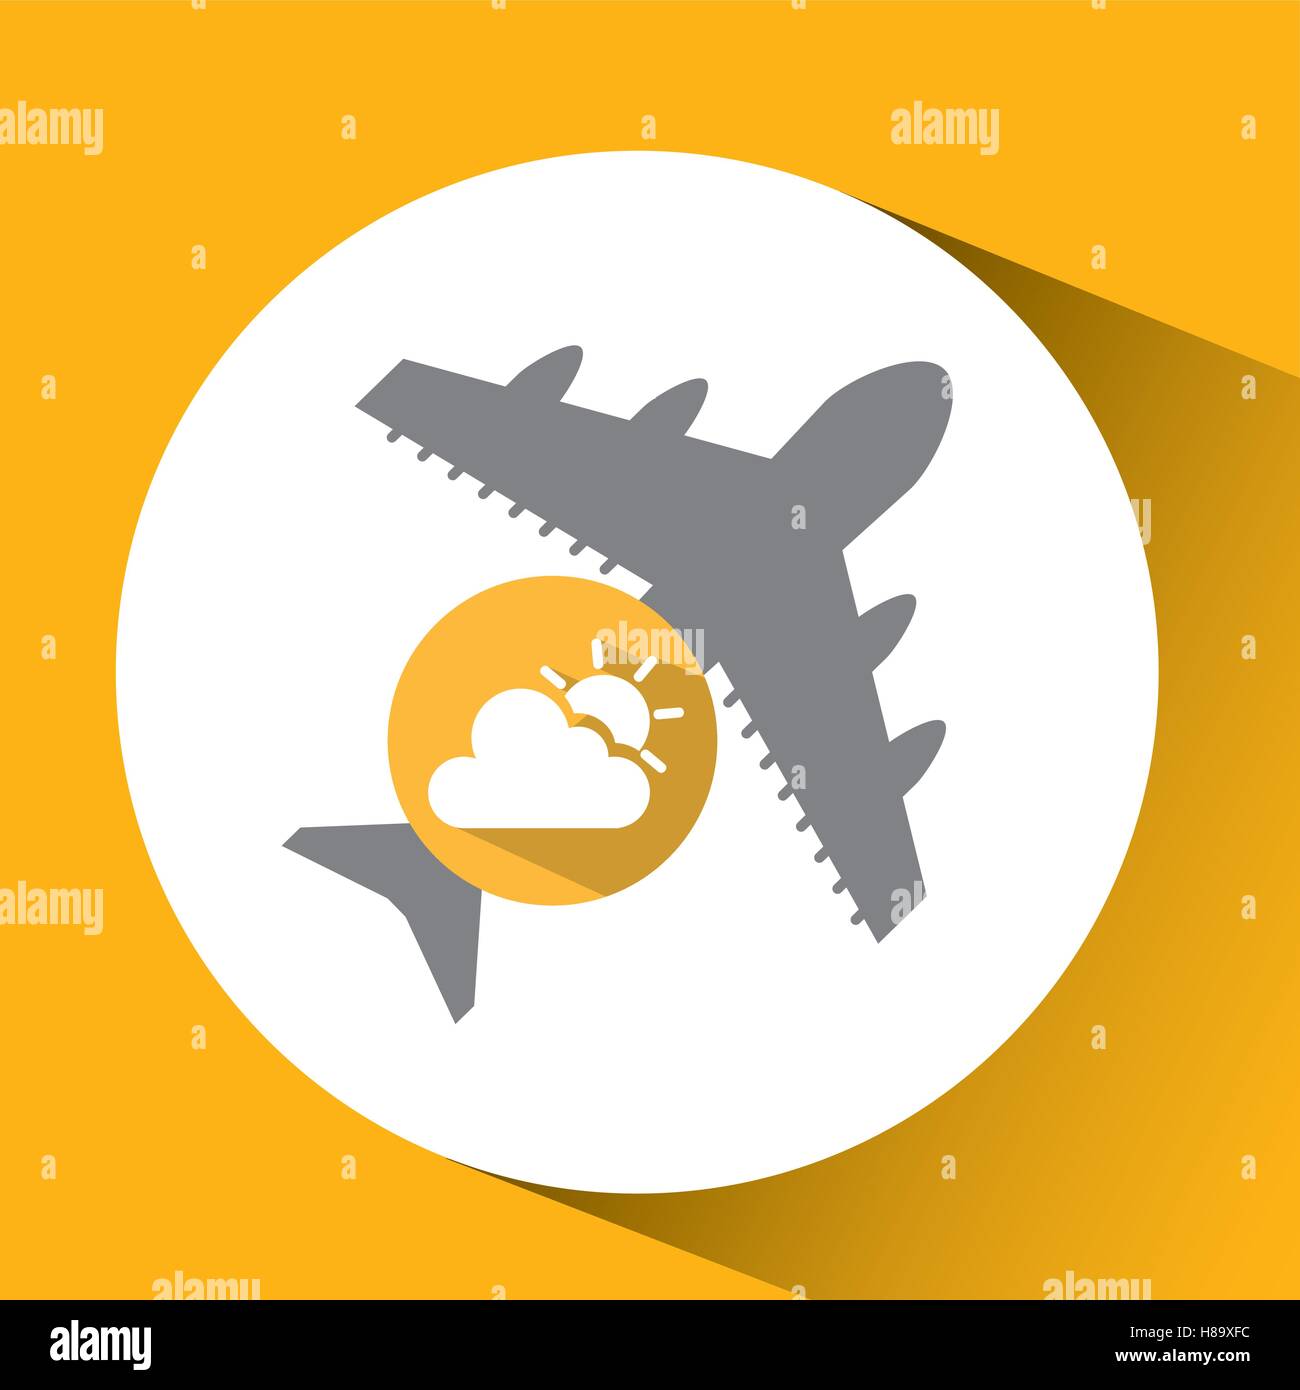 Los viajes en avión. previsión meteorológica icono sun cloud ilustración vectorial EPS 10 Ilustración del Vector